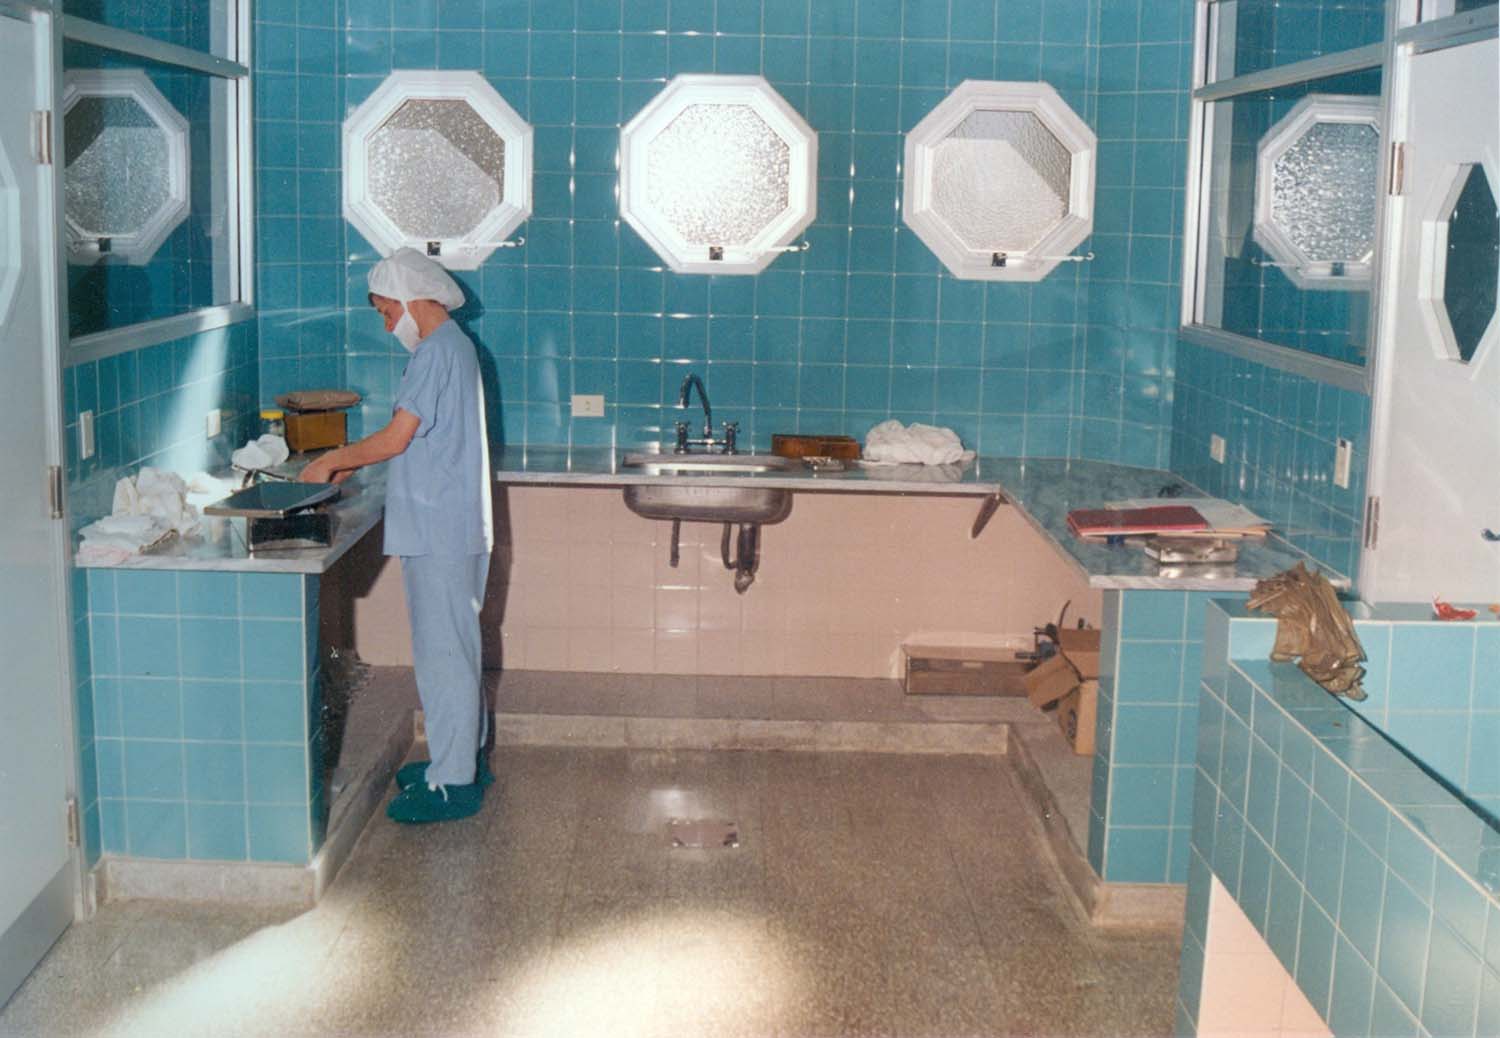 1991 Inauguración Hospital San Martin - Cuidados Intensivos